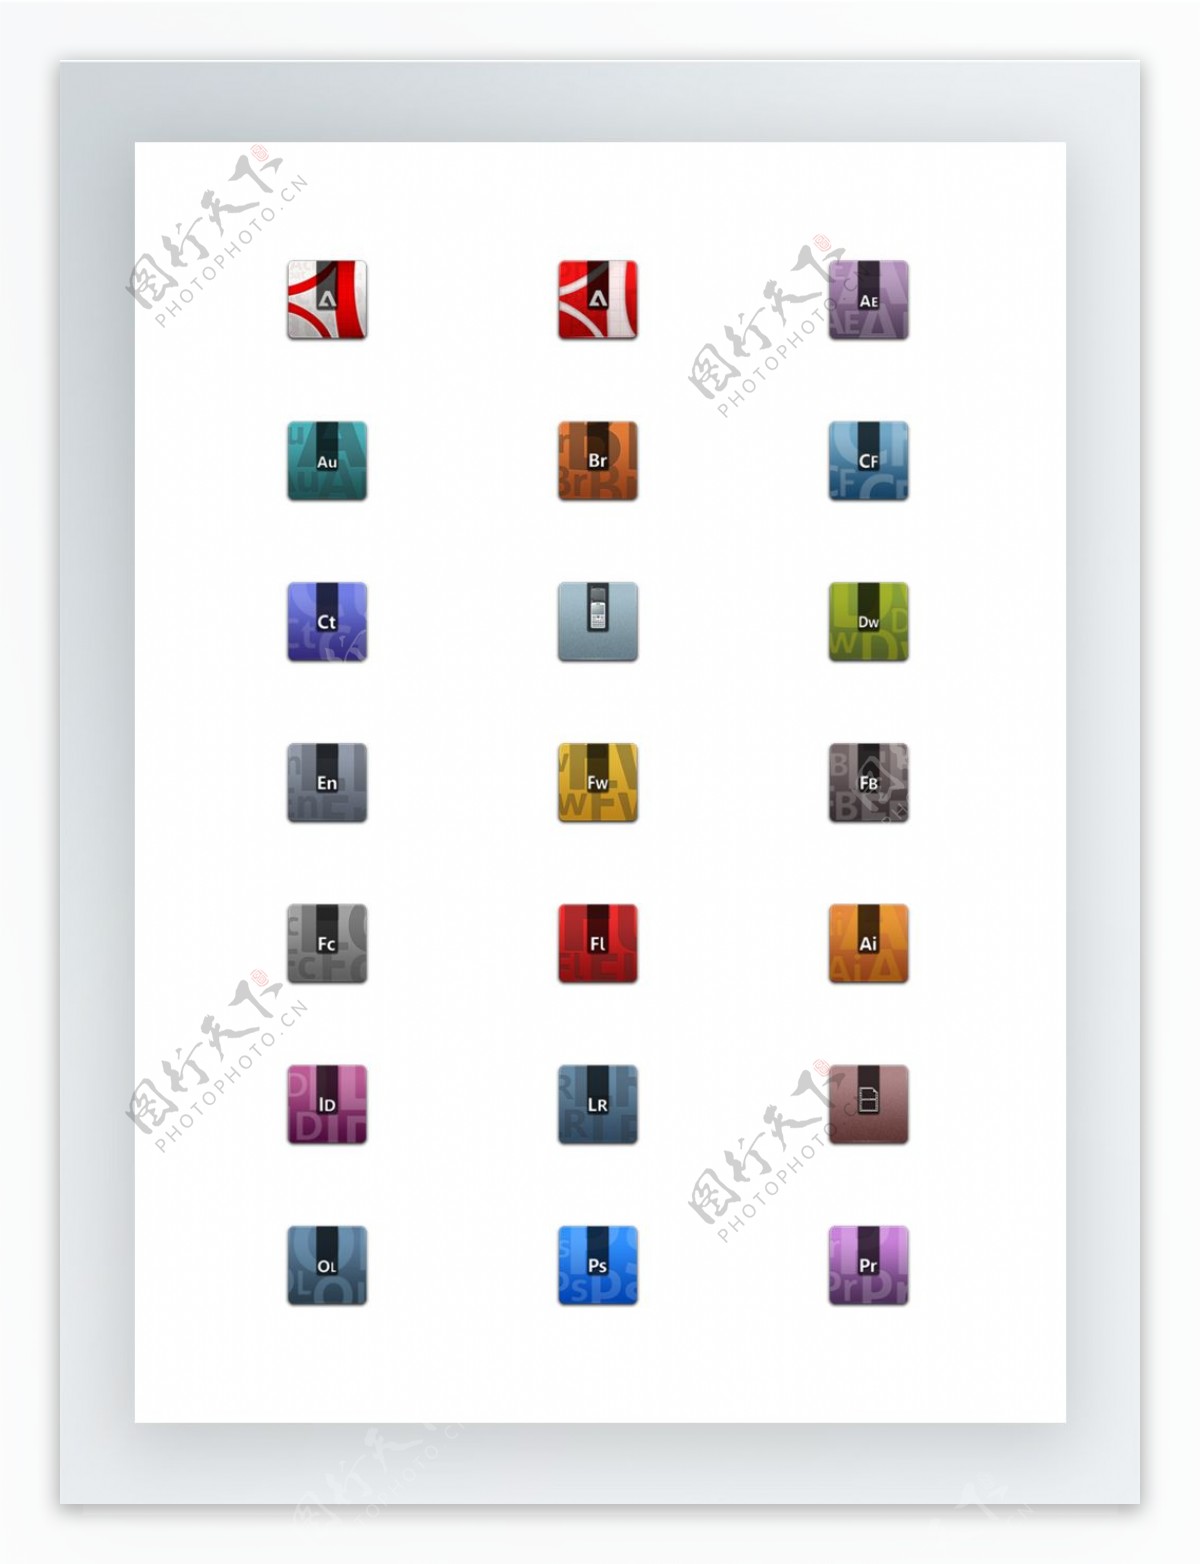 Adobe系列产品图标